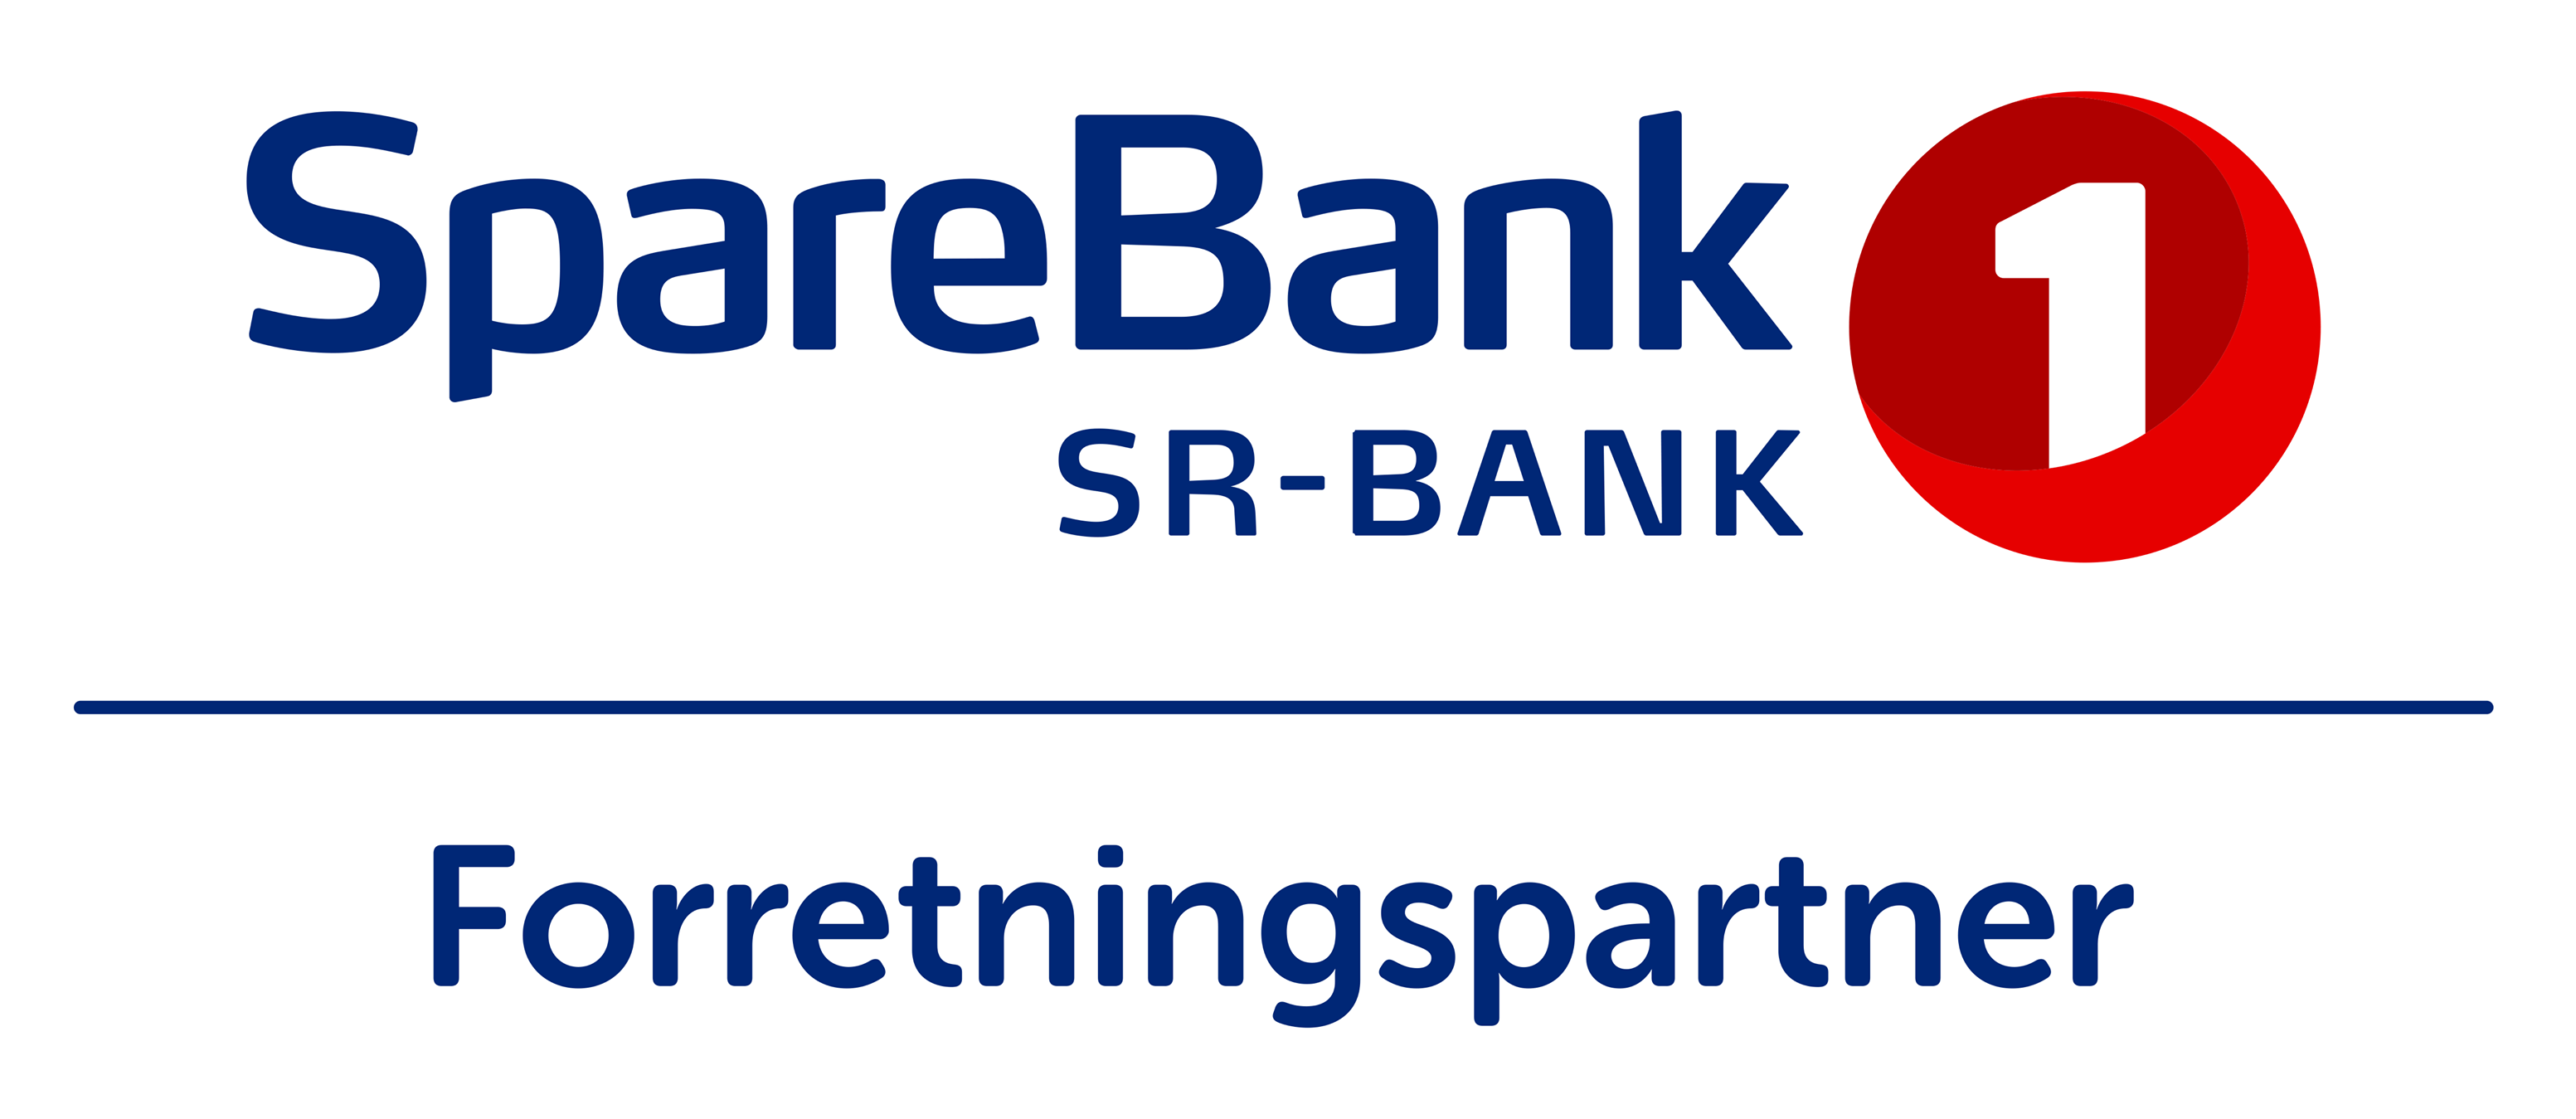 Sparebank 1 SR-Bank Forretningspartner